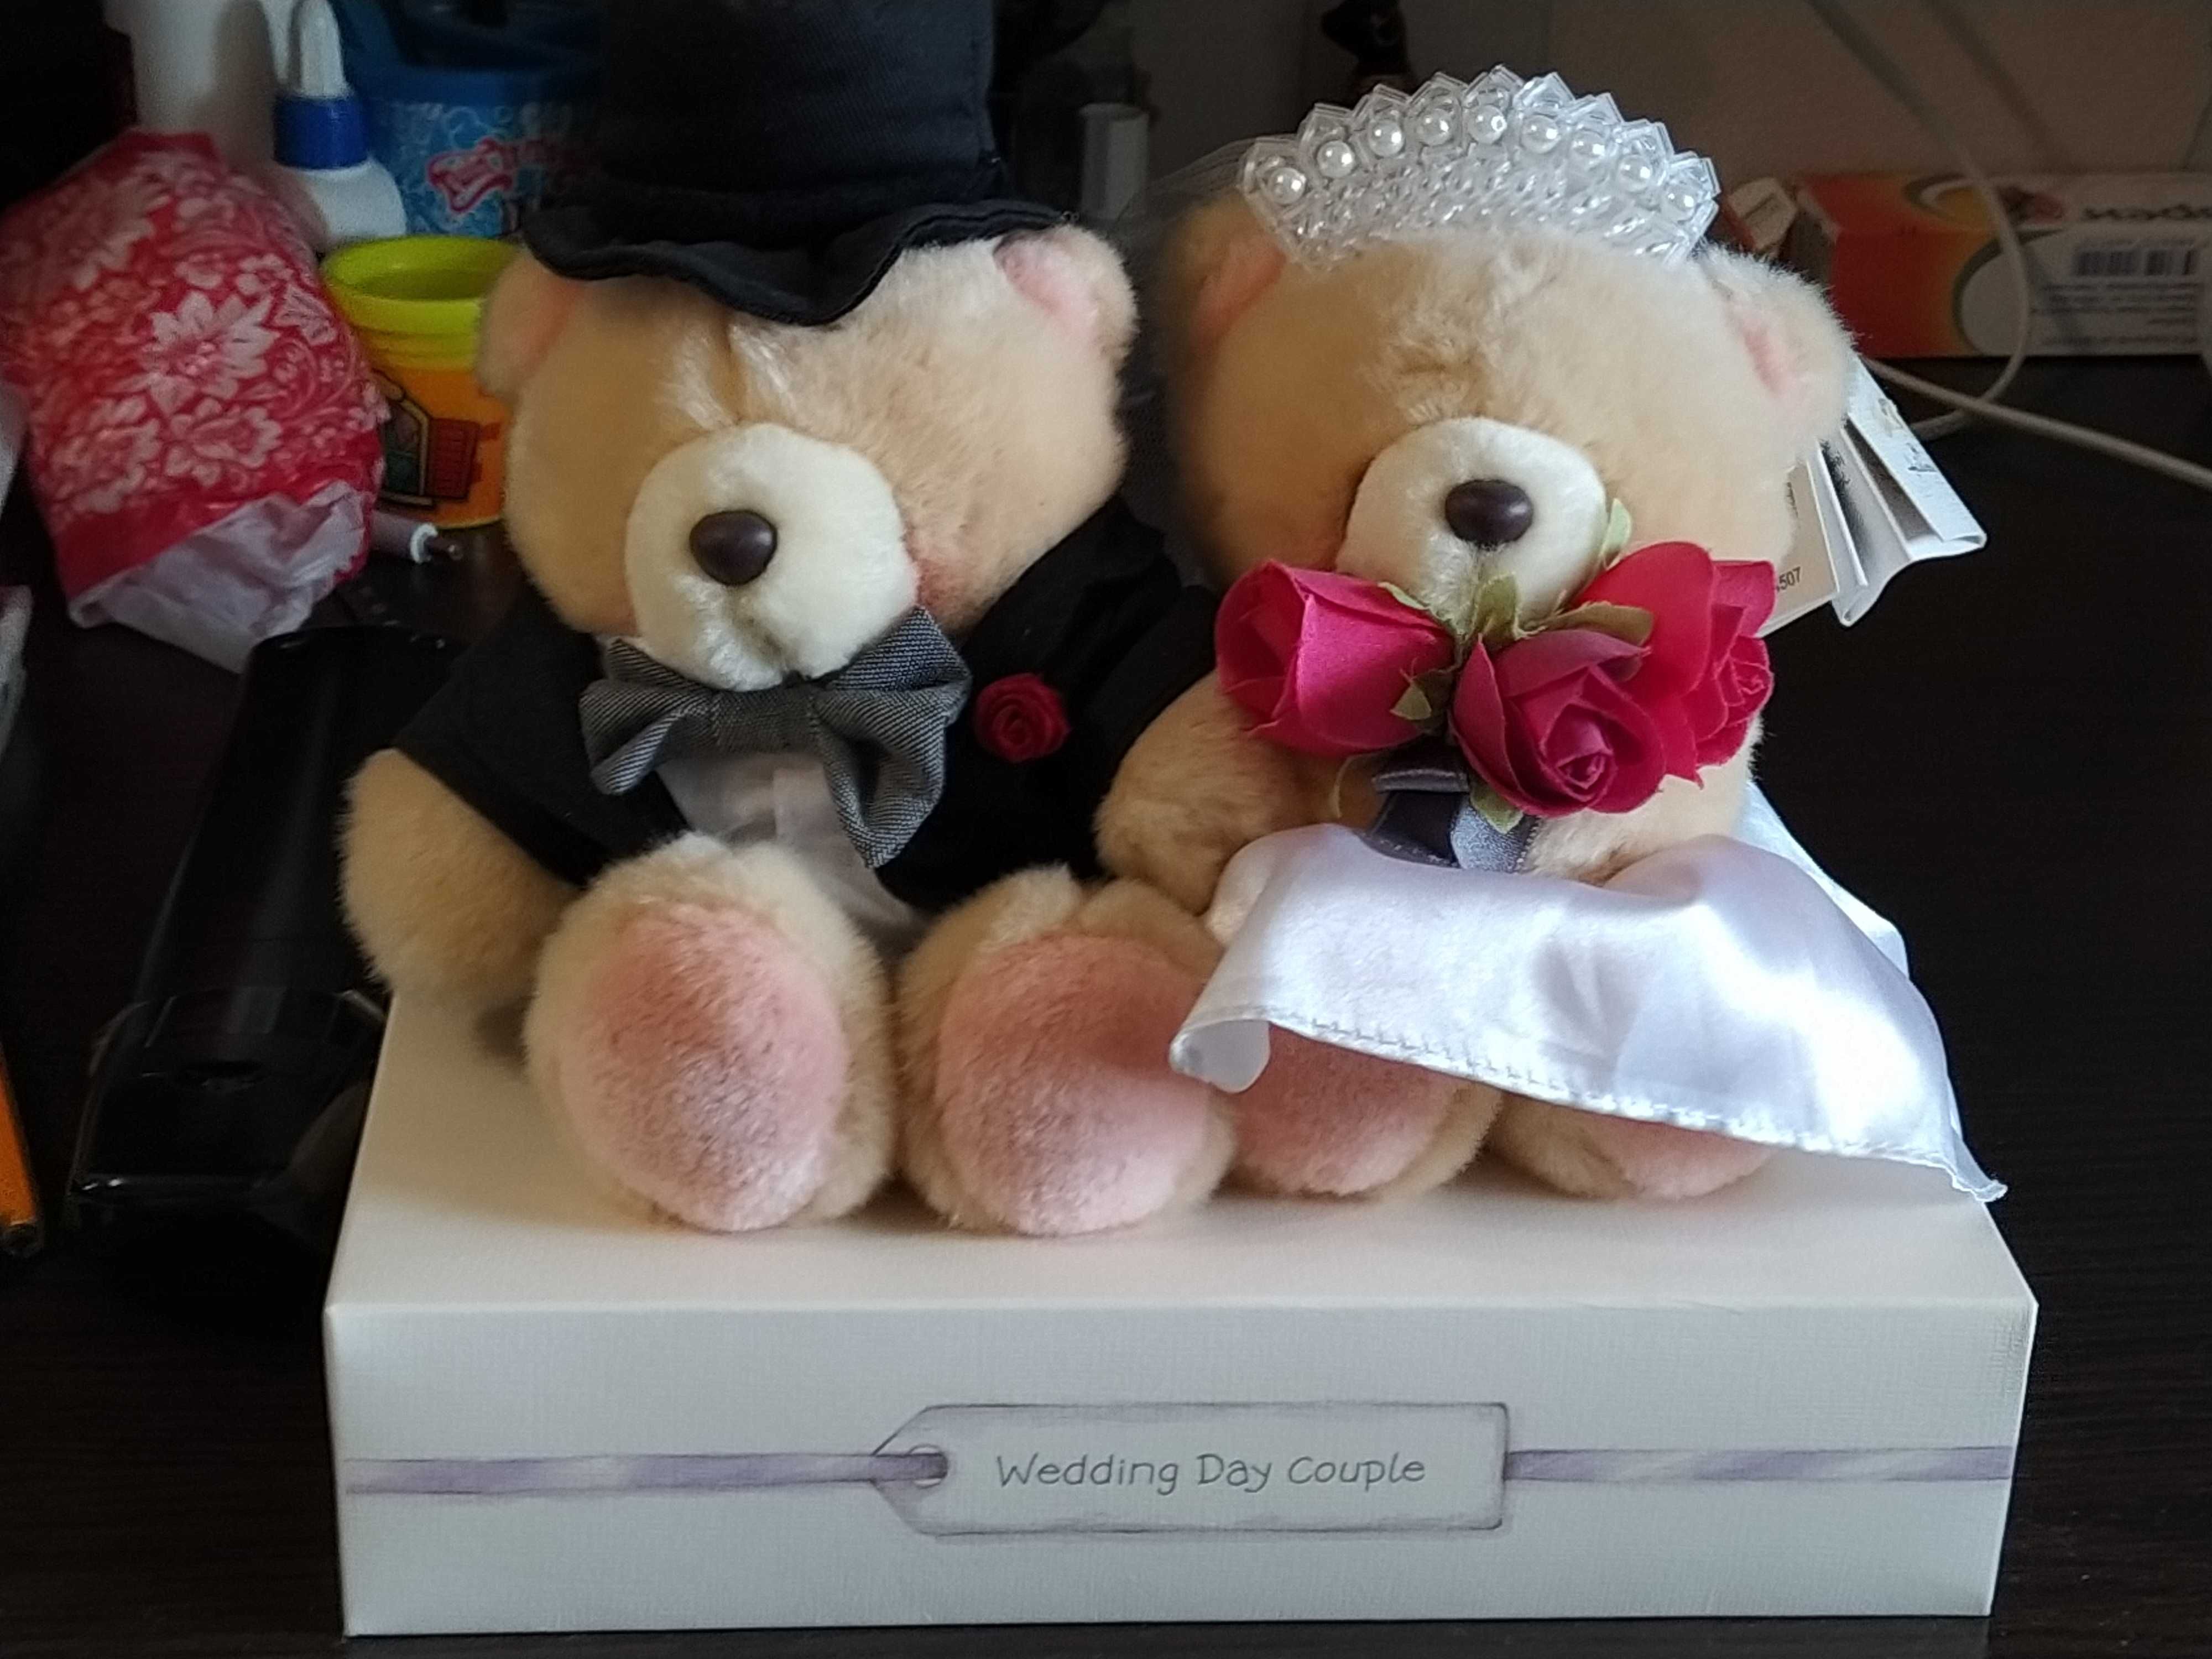 Couple wedding hallmark мишки Тедди жених и невеста